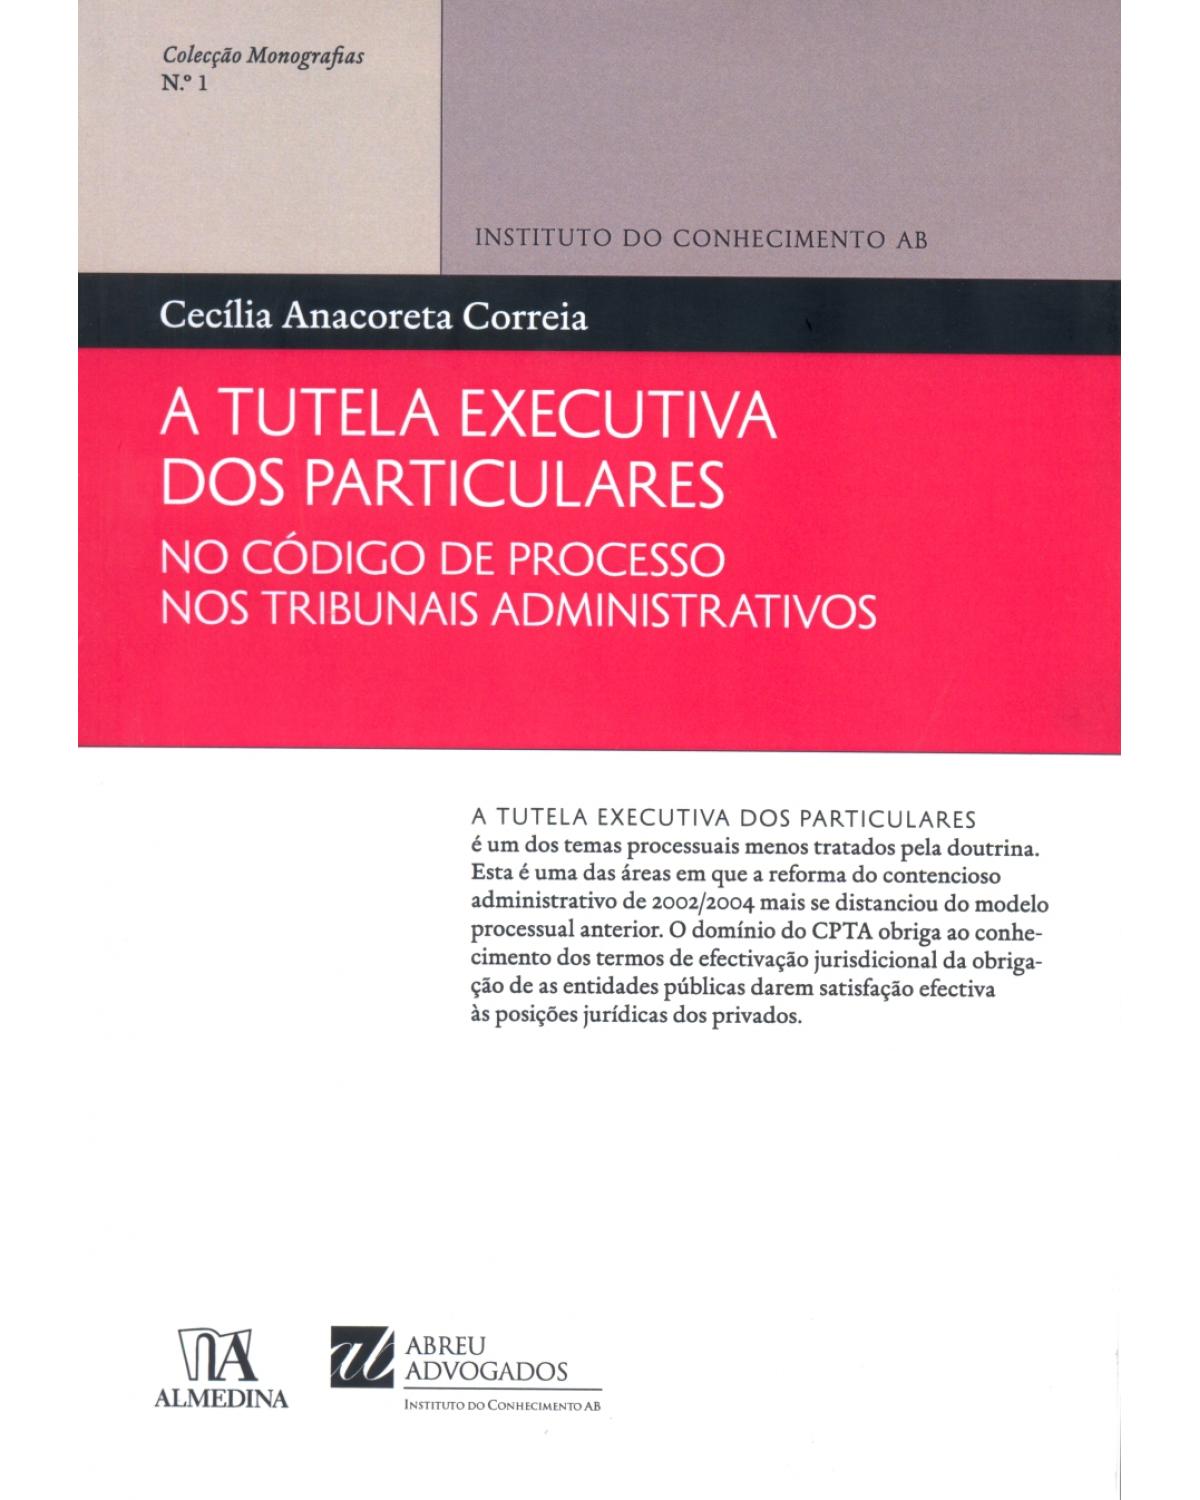 A tutela executiva dos particulares no código de processo nos tribunais administrativos - Volume 1:  - 1ª Edição | 2013